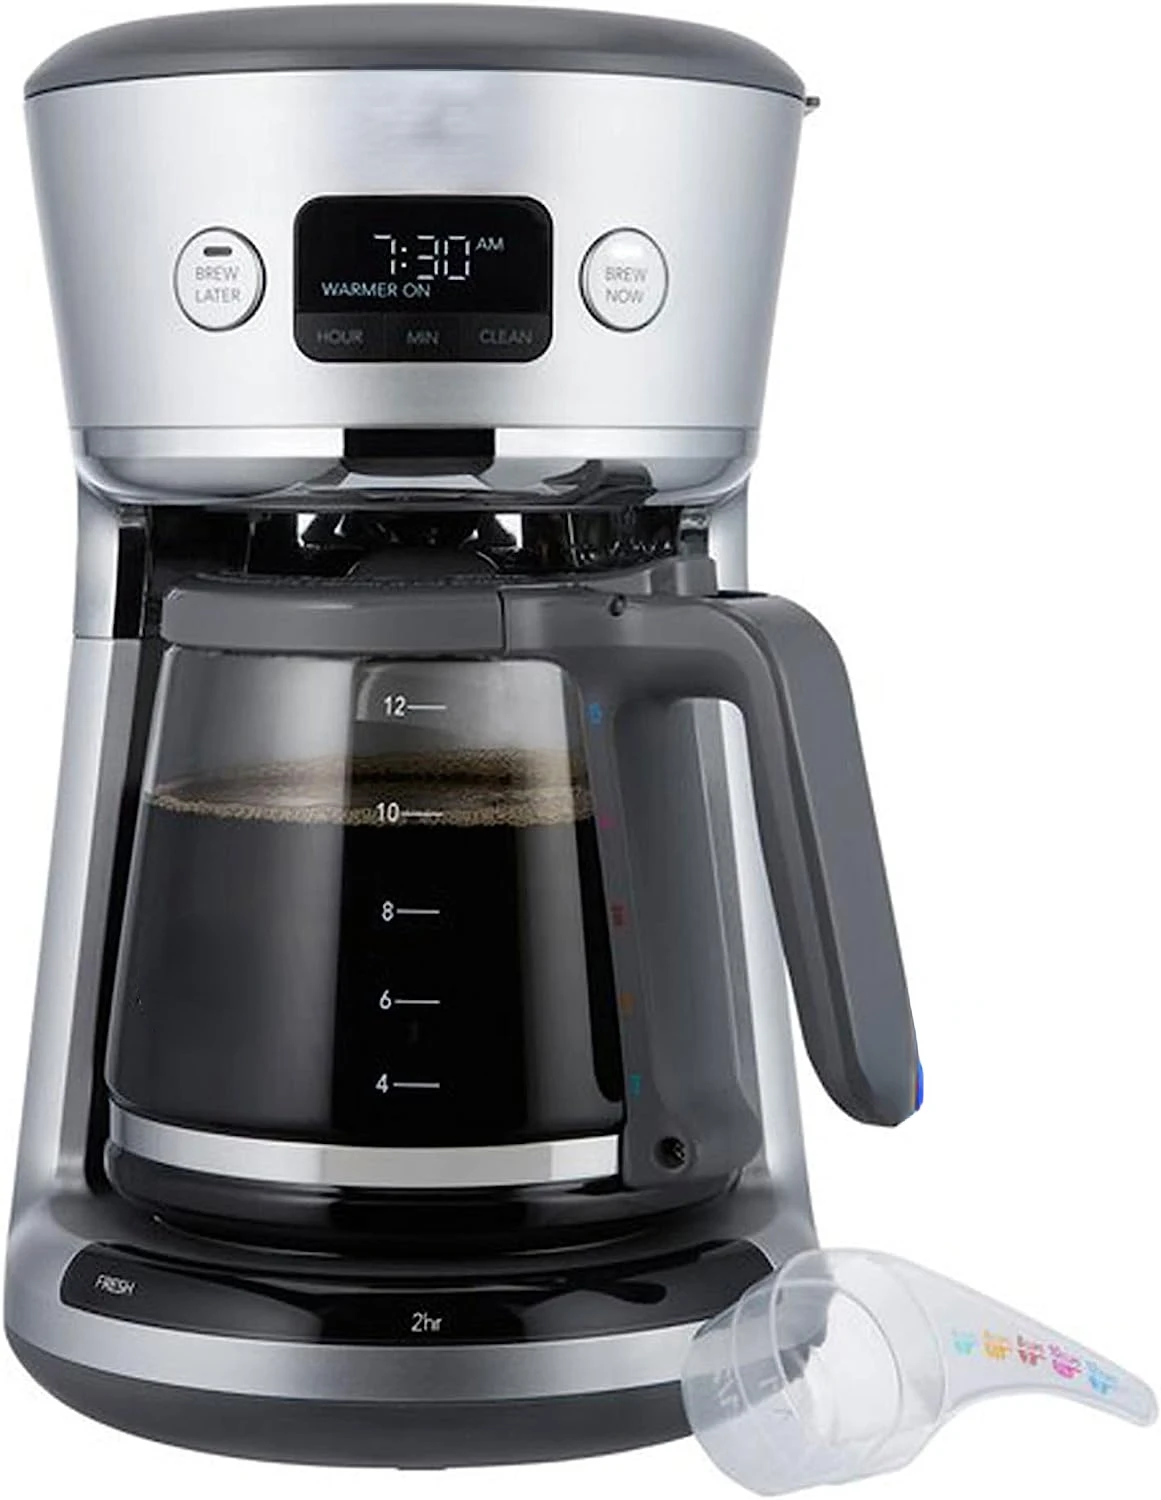 Кофе 31160393 Easy Measure, программируемая цифровая кофеварка на 12 чашек со встроенной фильтрацией и мерной ложкой, Sil0